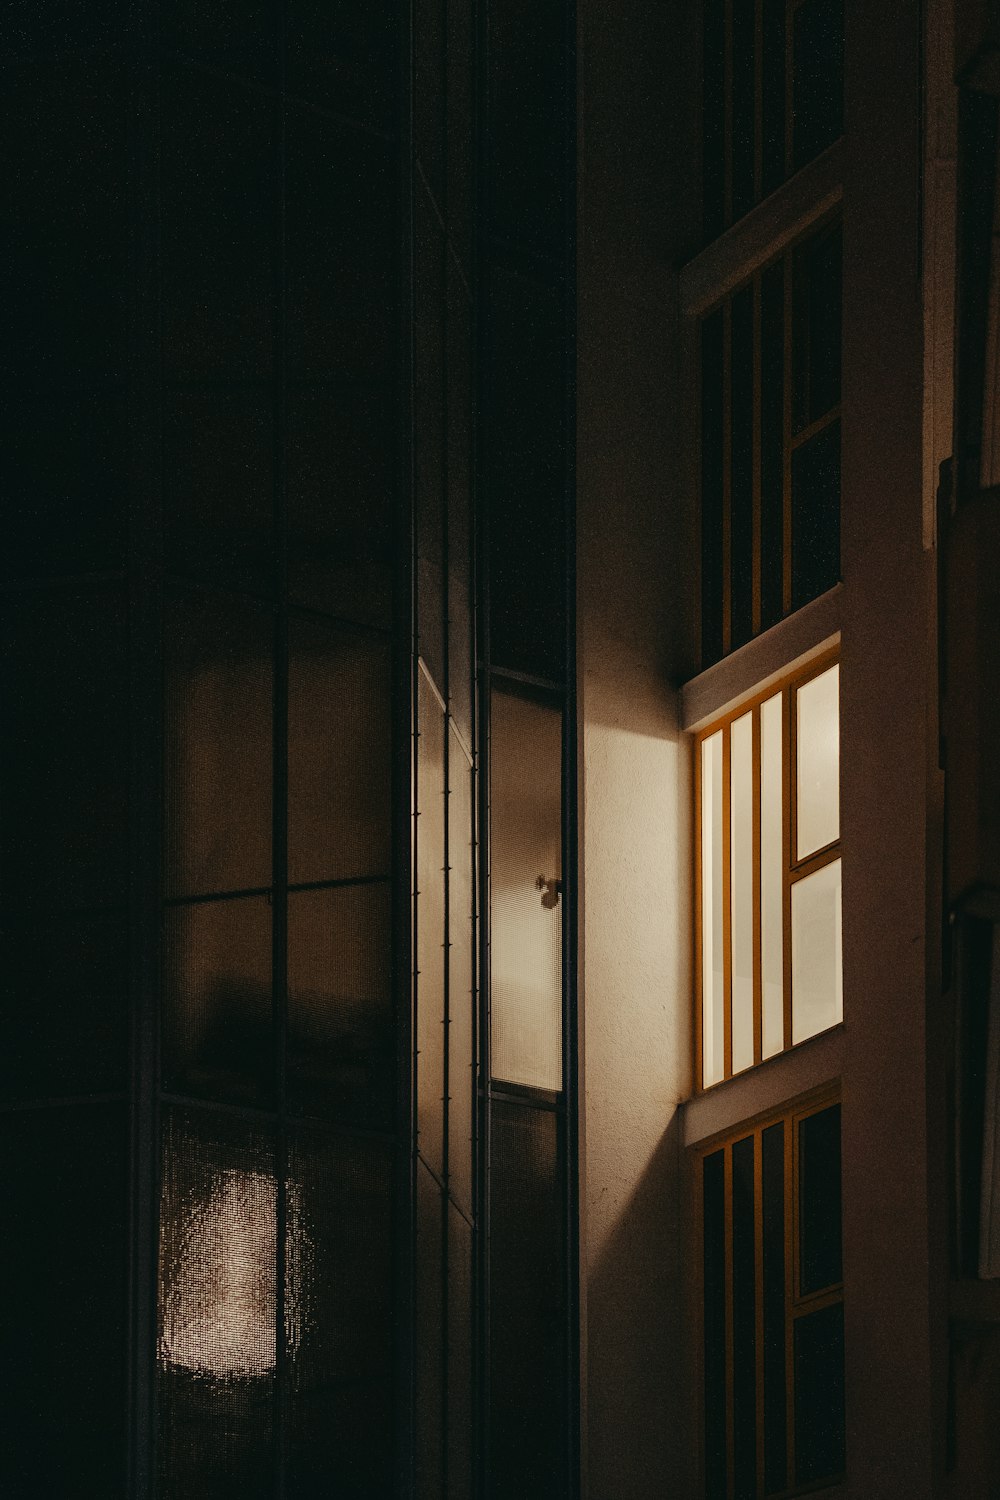 Una habitación oscura con una luz que entra por la ventana